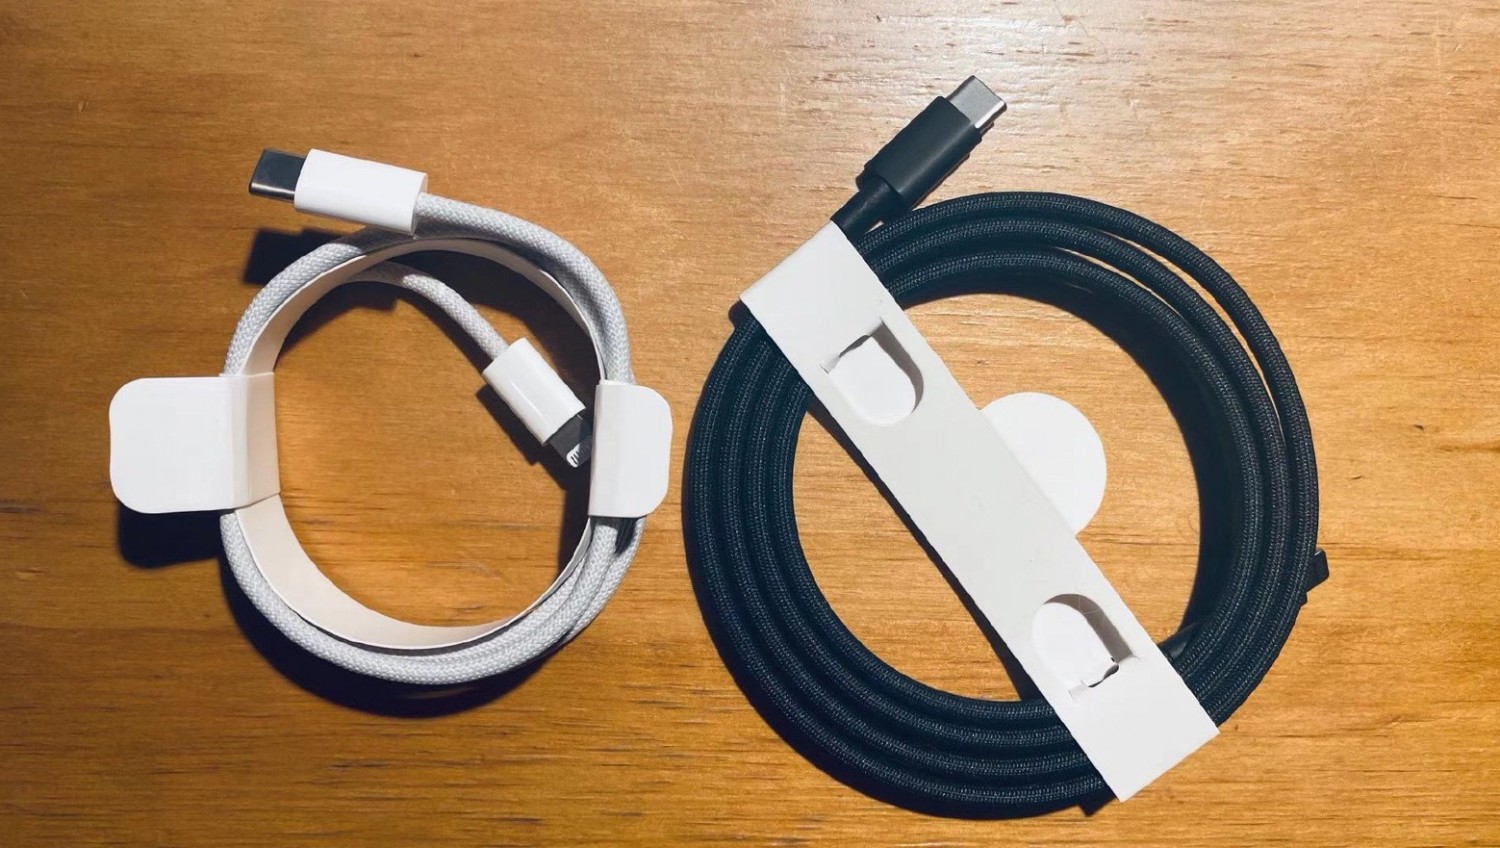 Опубликованы фото нового кабеля Lightning, который идёт в комплекте с iPhone 12